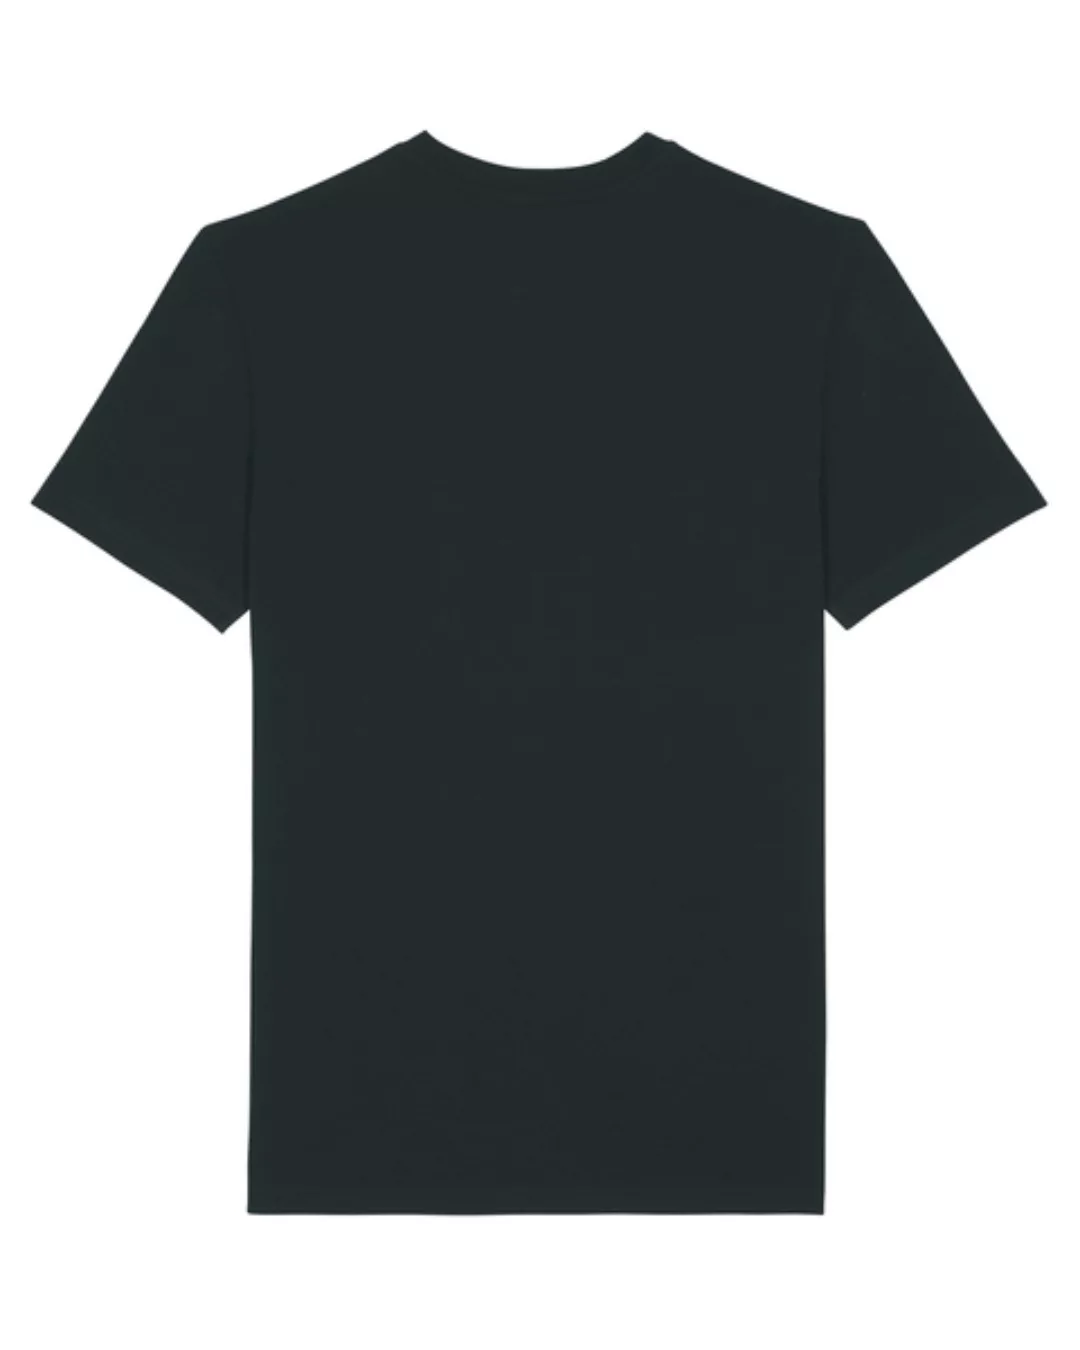 Eco Empire Crewlogo 03 | Unisex T-shirt günstig online kaufen